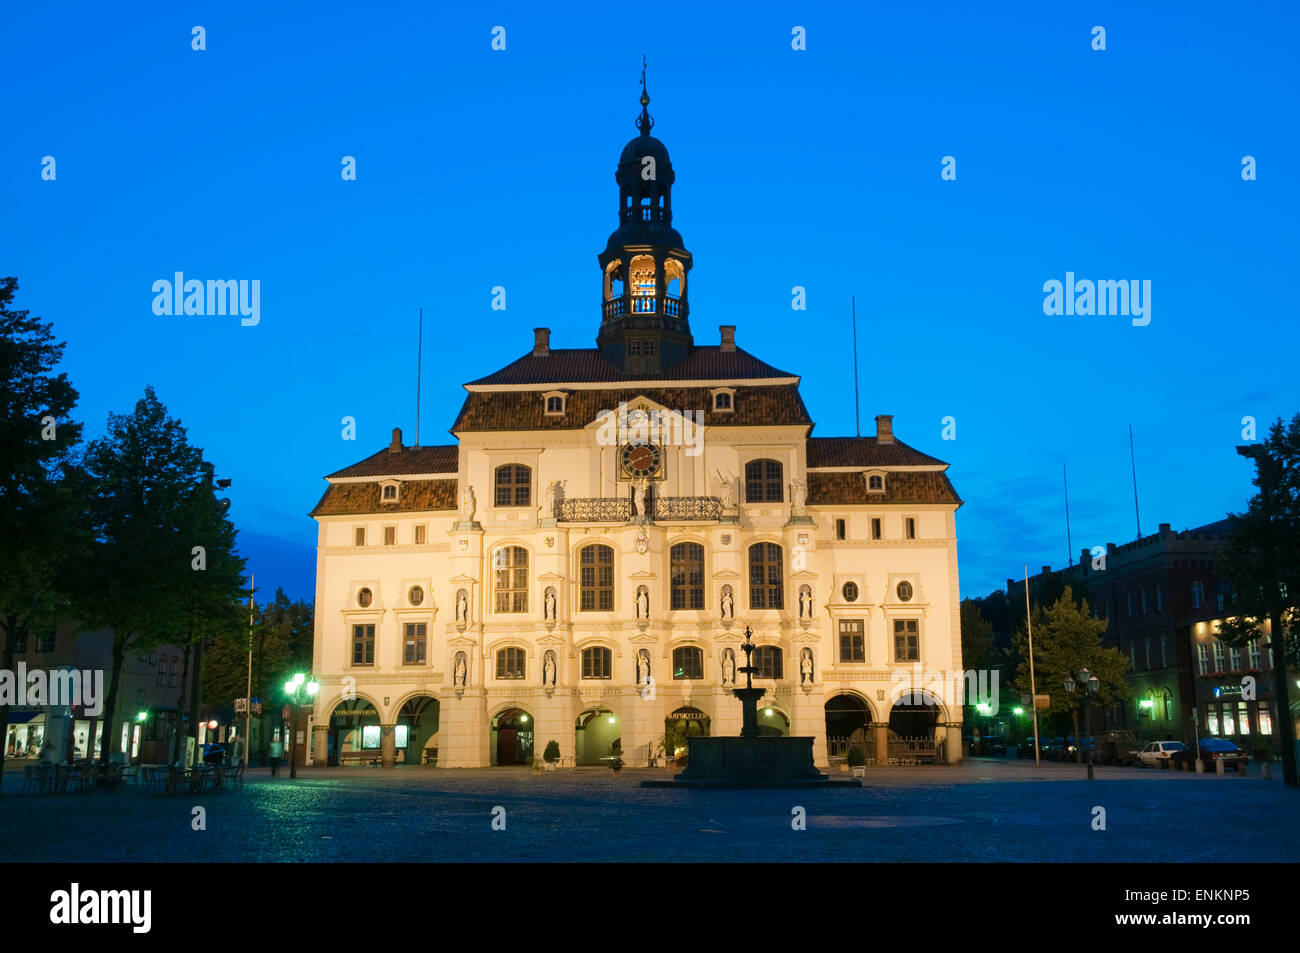 Rathaus Bei Daemmerung, Altstadt, Lüneburg, Niedersachsen, Deutschland |  Gilden-Halle bei Dämmerung, alte Town, Lüneburg, Niedersachsen Stockfoto